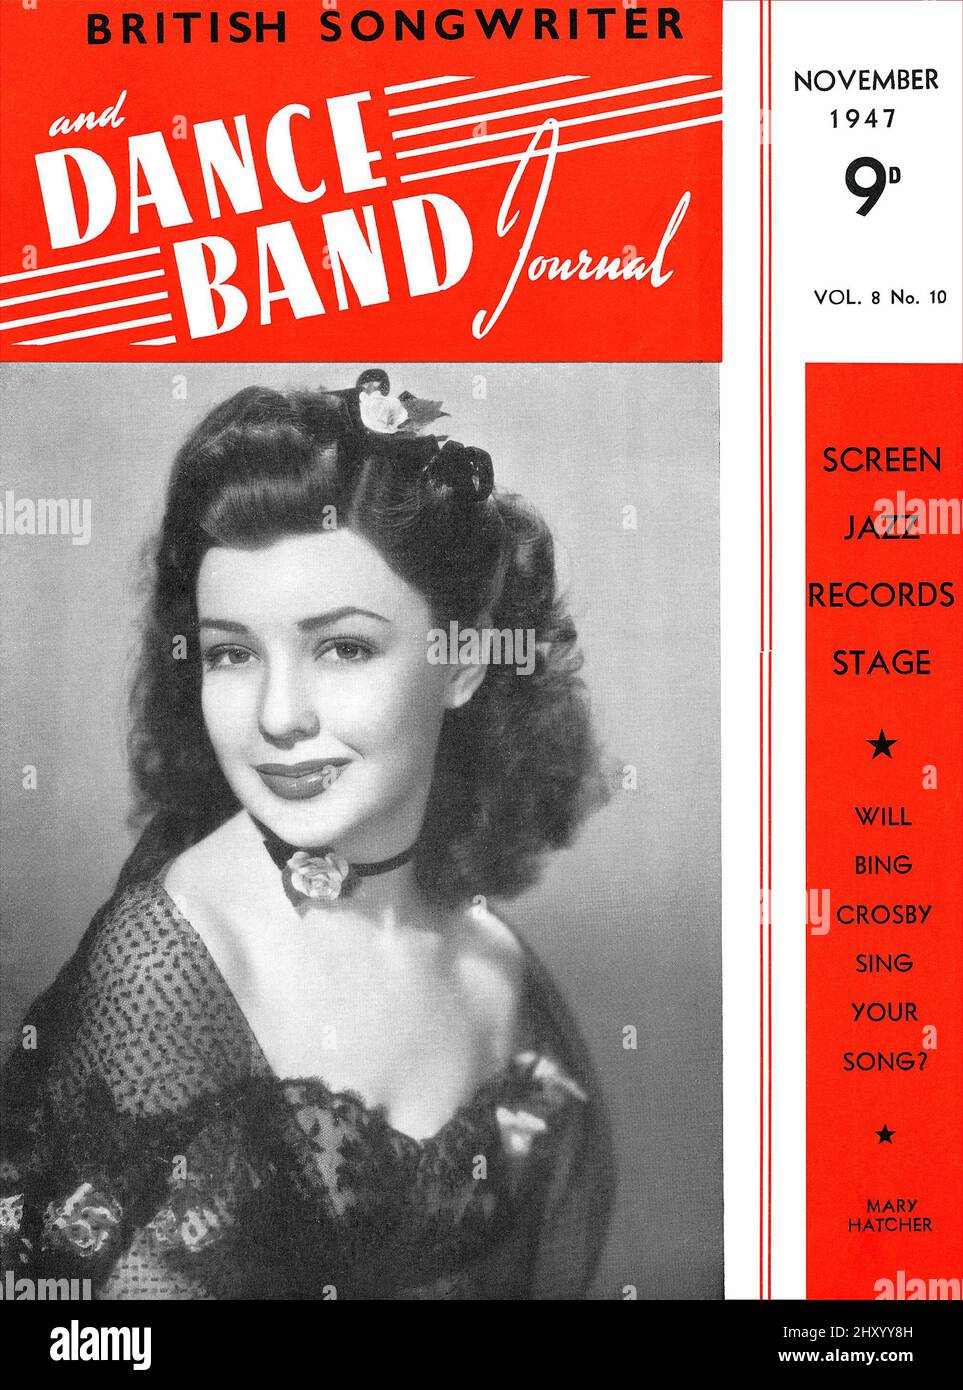 Couverture du magazine vintage de l'auteur-compositeur britannique et du Dance Band Journal pour novembre 1947, avec l'acteur et la chanteuse Mary Hatcher. Banque D'Images